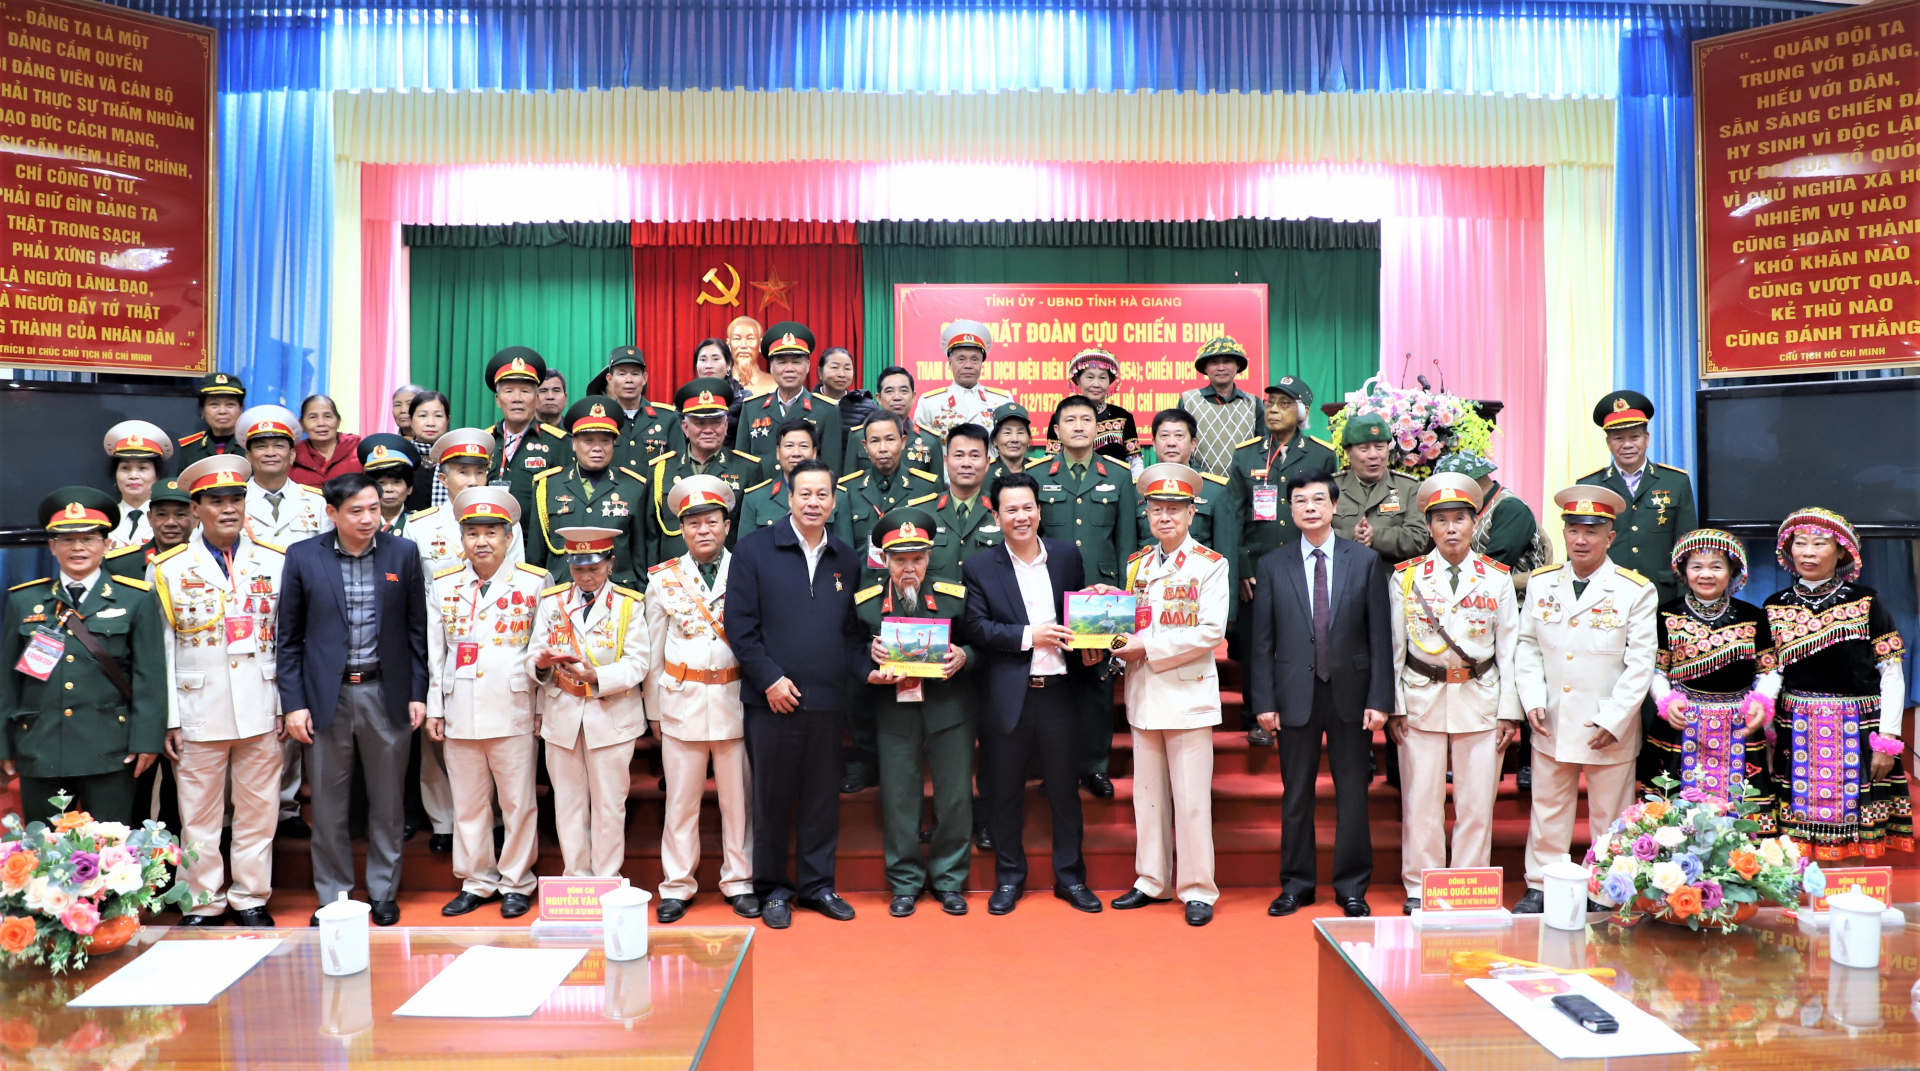 Các đồng chí lãnh đạo tỉnh tặng quà cho Đoàn CCB 3 chiến dịch lịch sử Việt Nam.